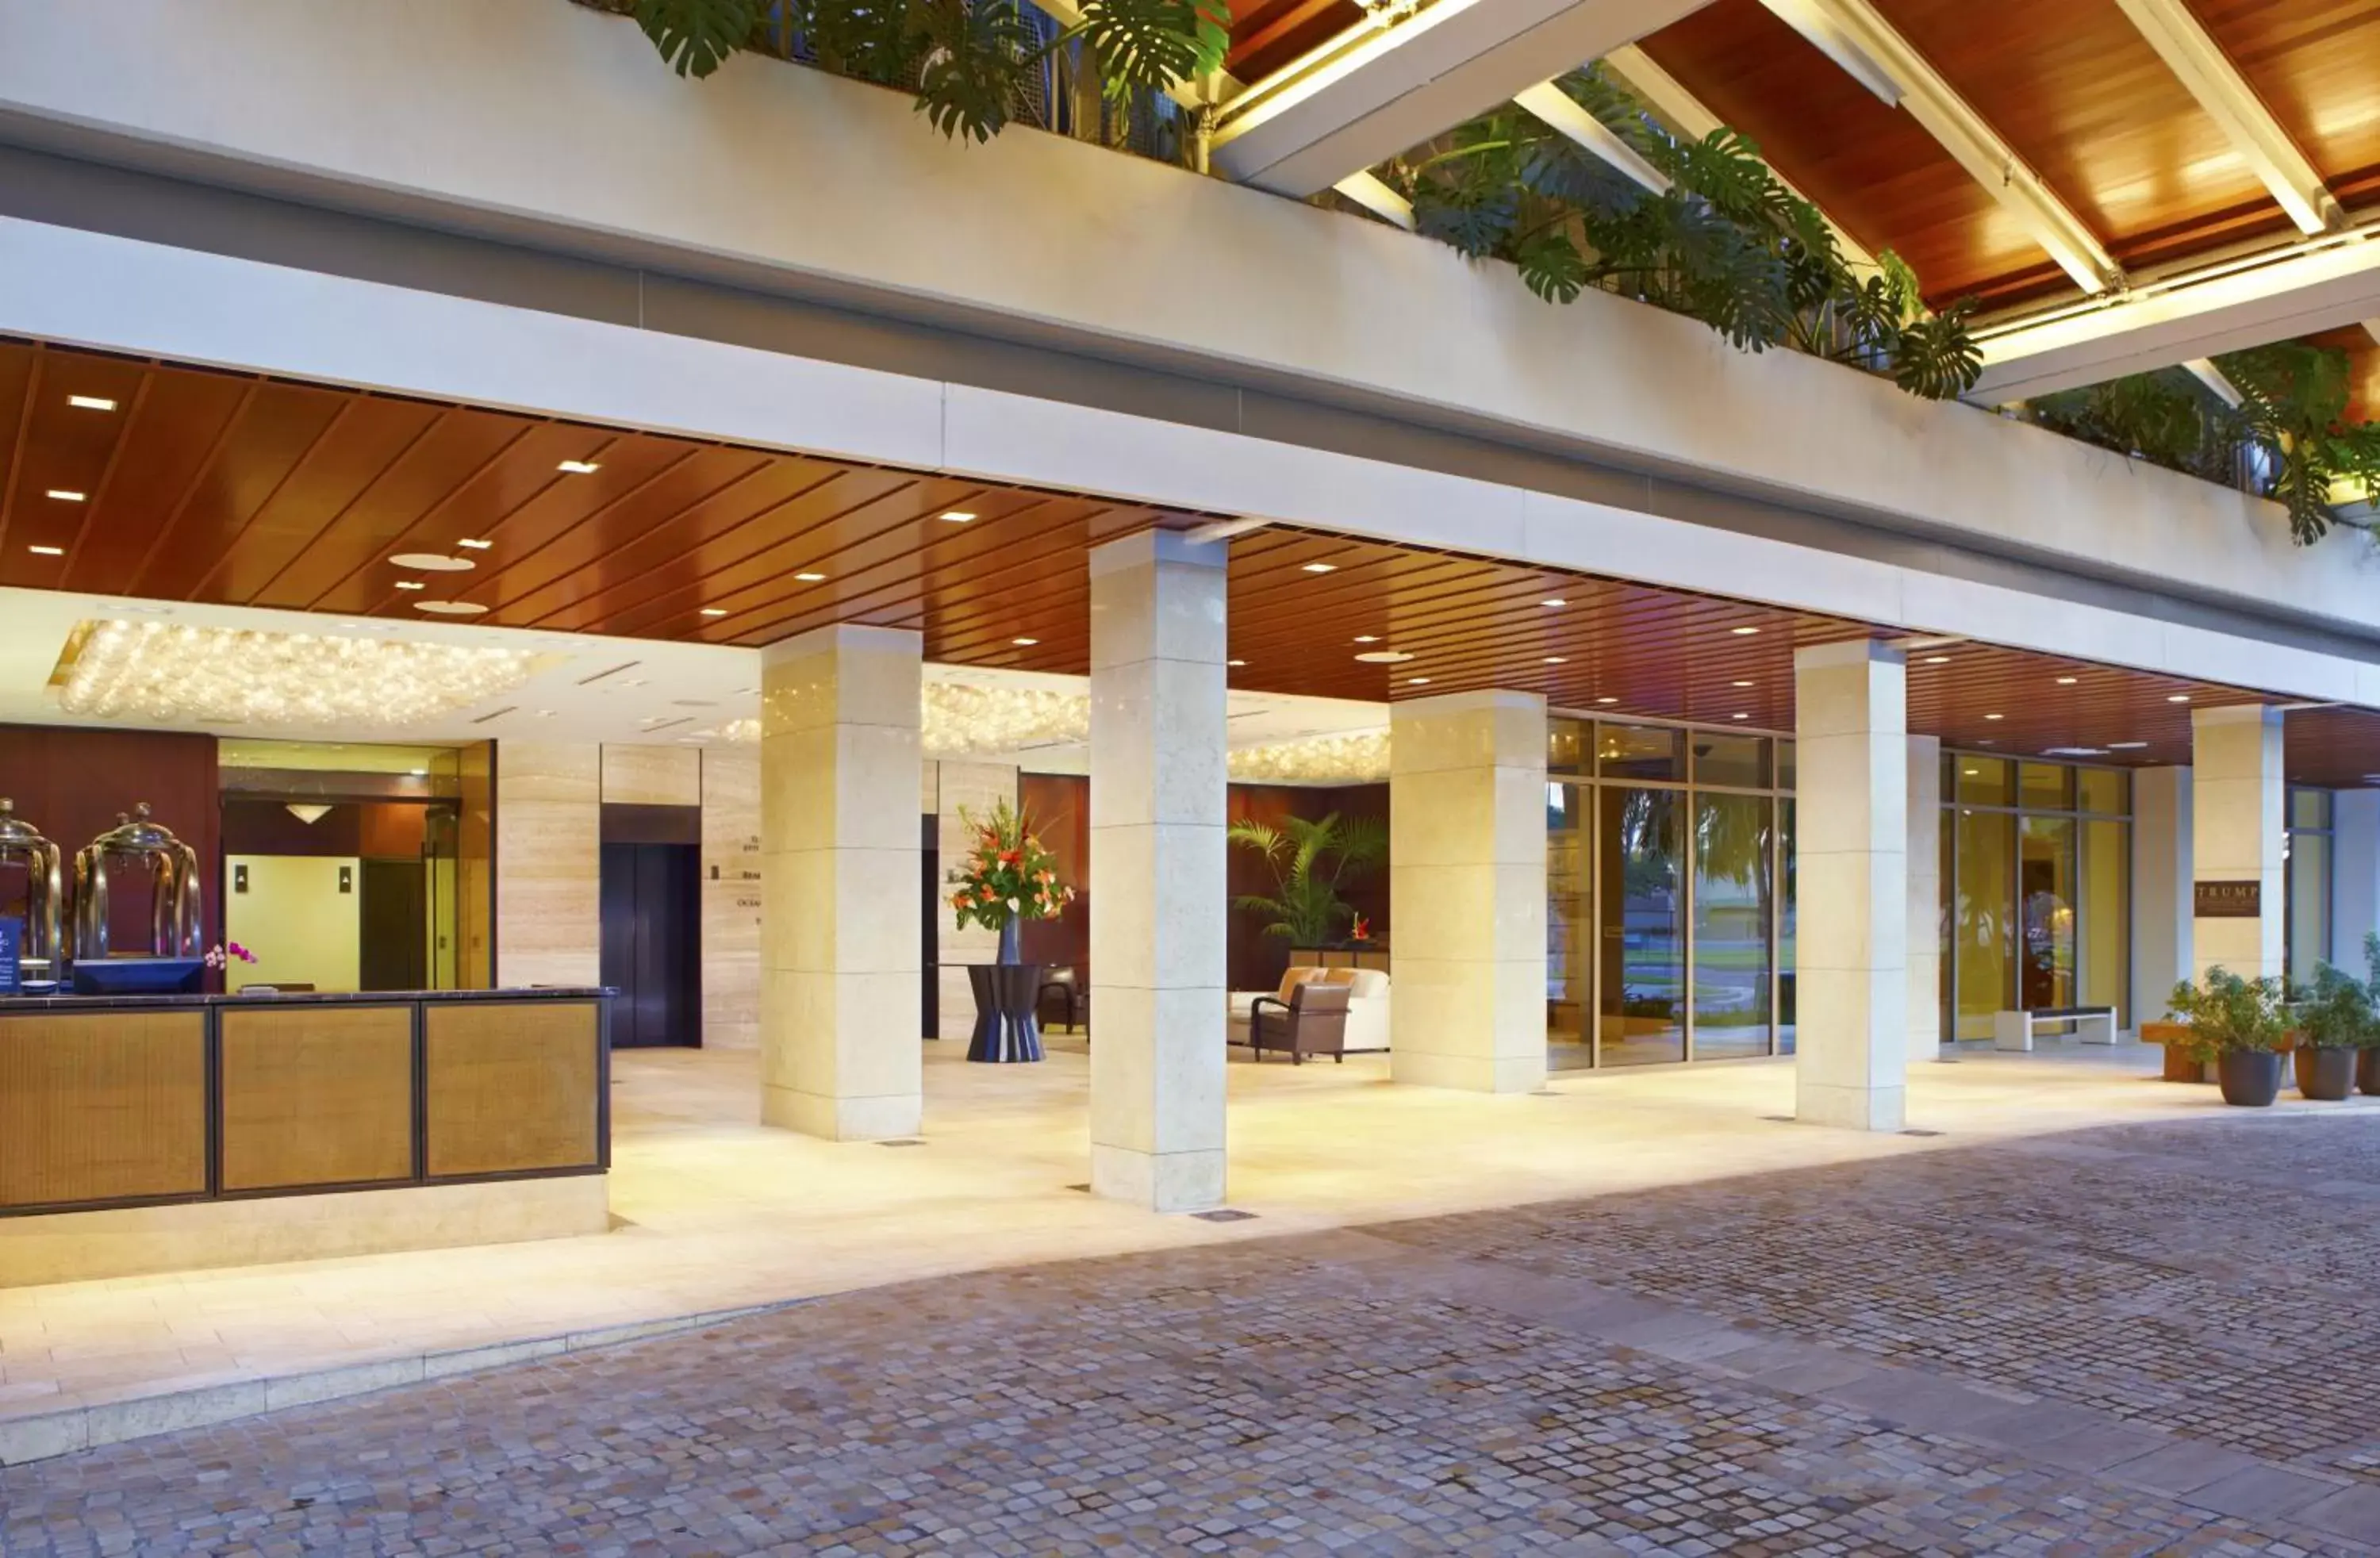 Lobby or reception in Trump International Hotel Waikiki